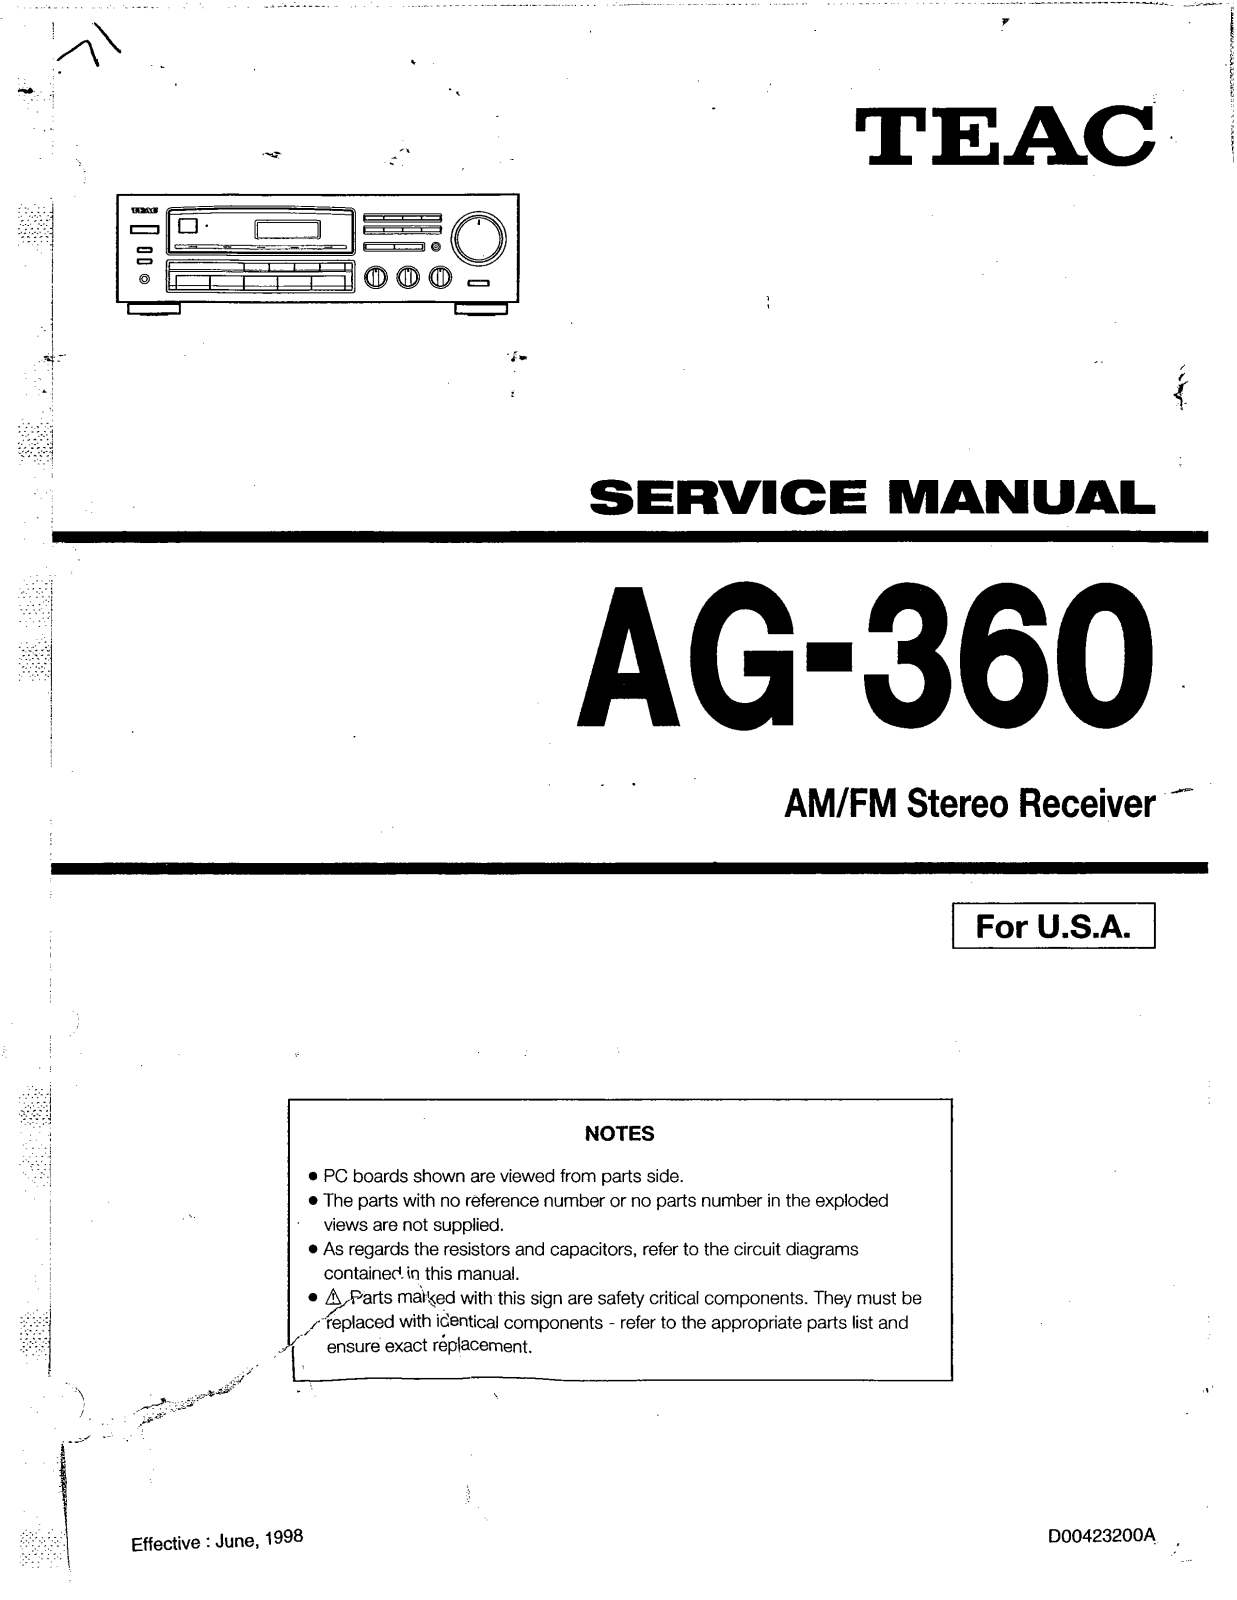 Teac AG-360 Service Manual